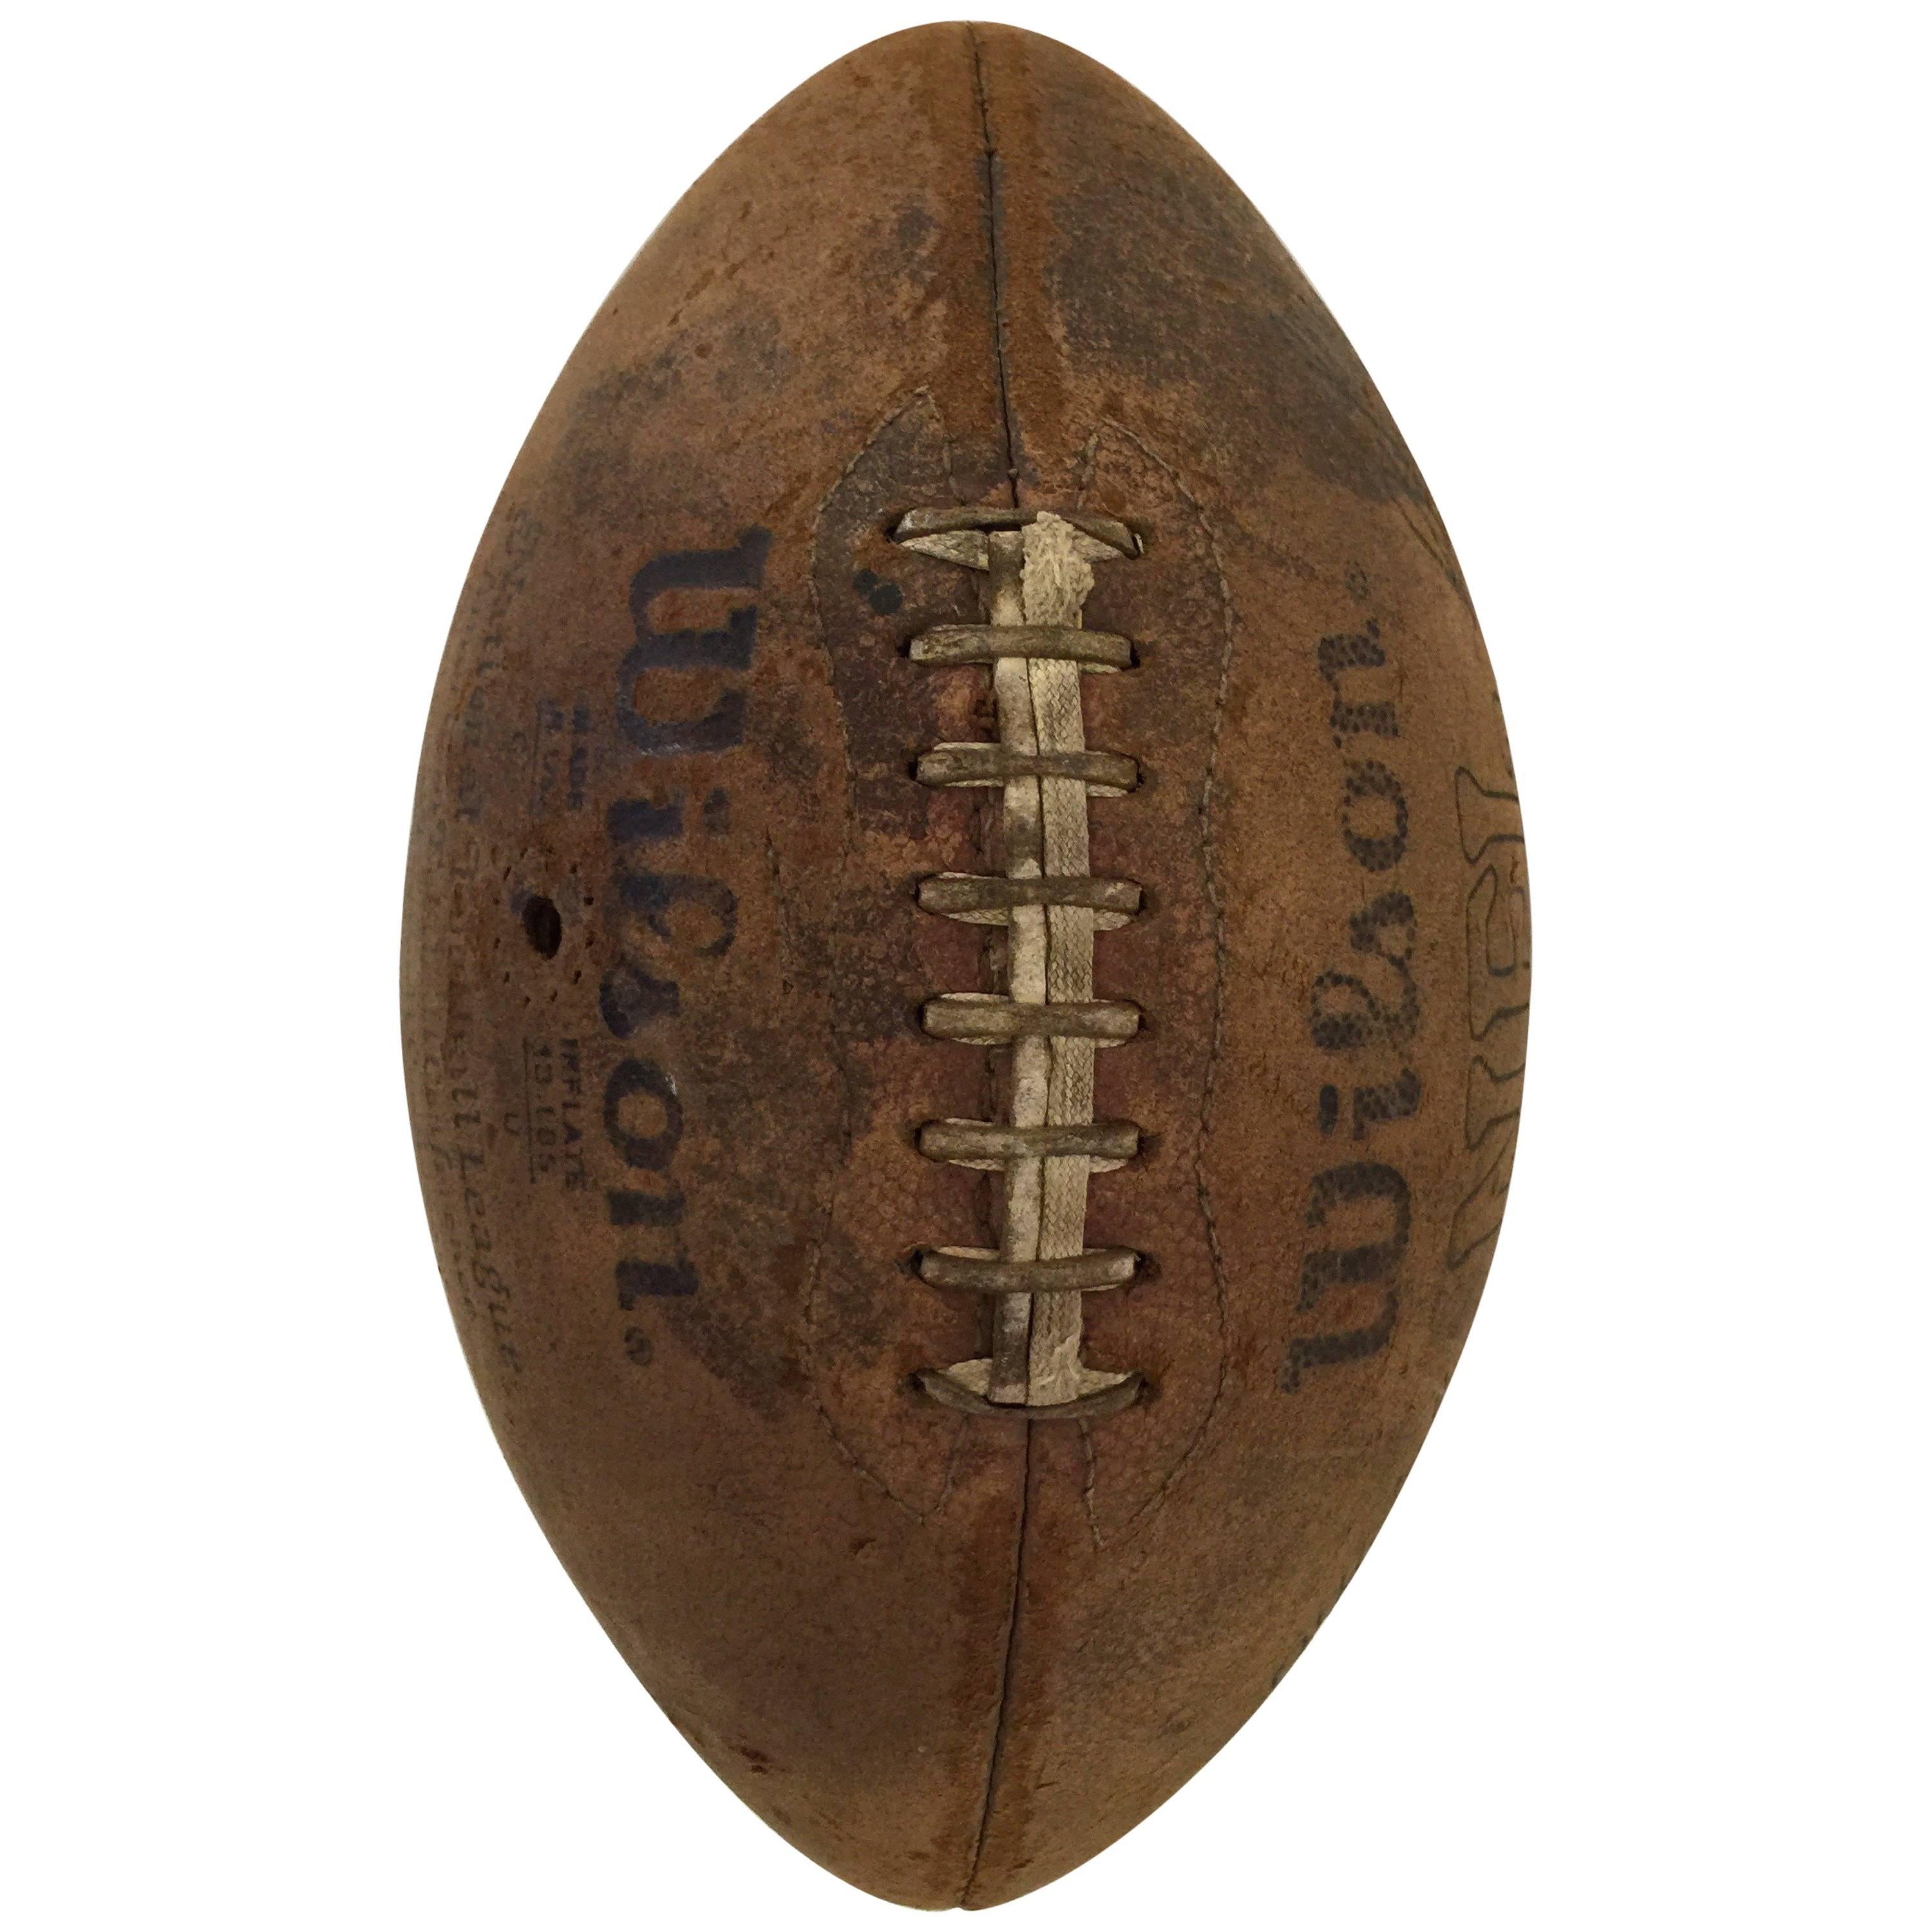 Vintage Pigskin Football by Wilson